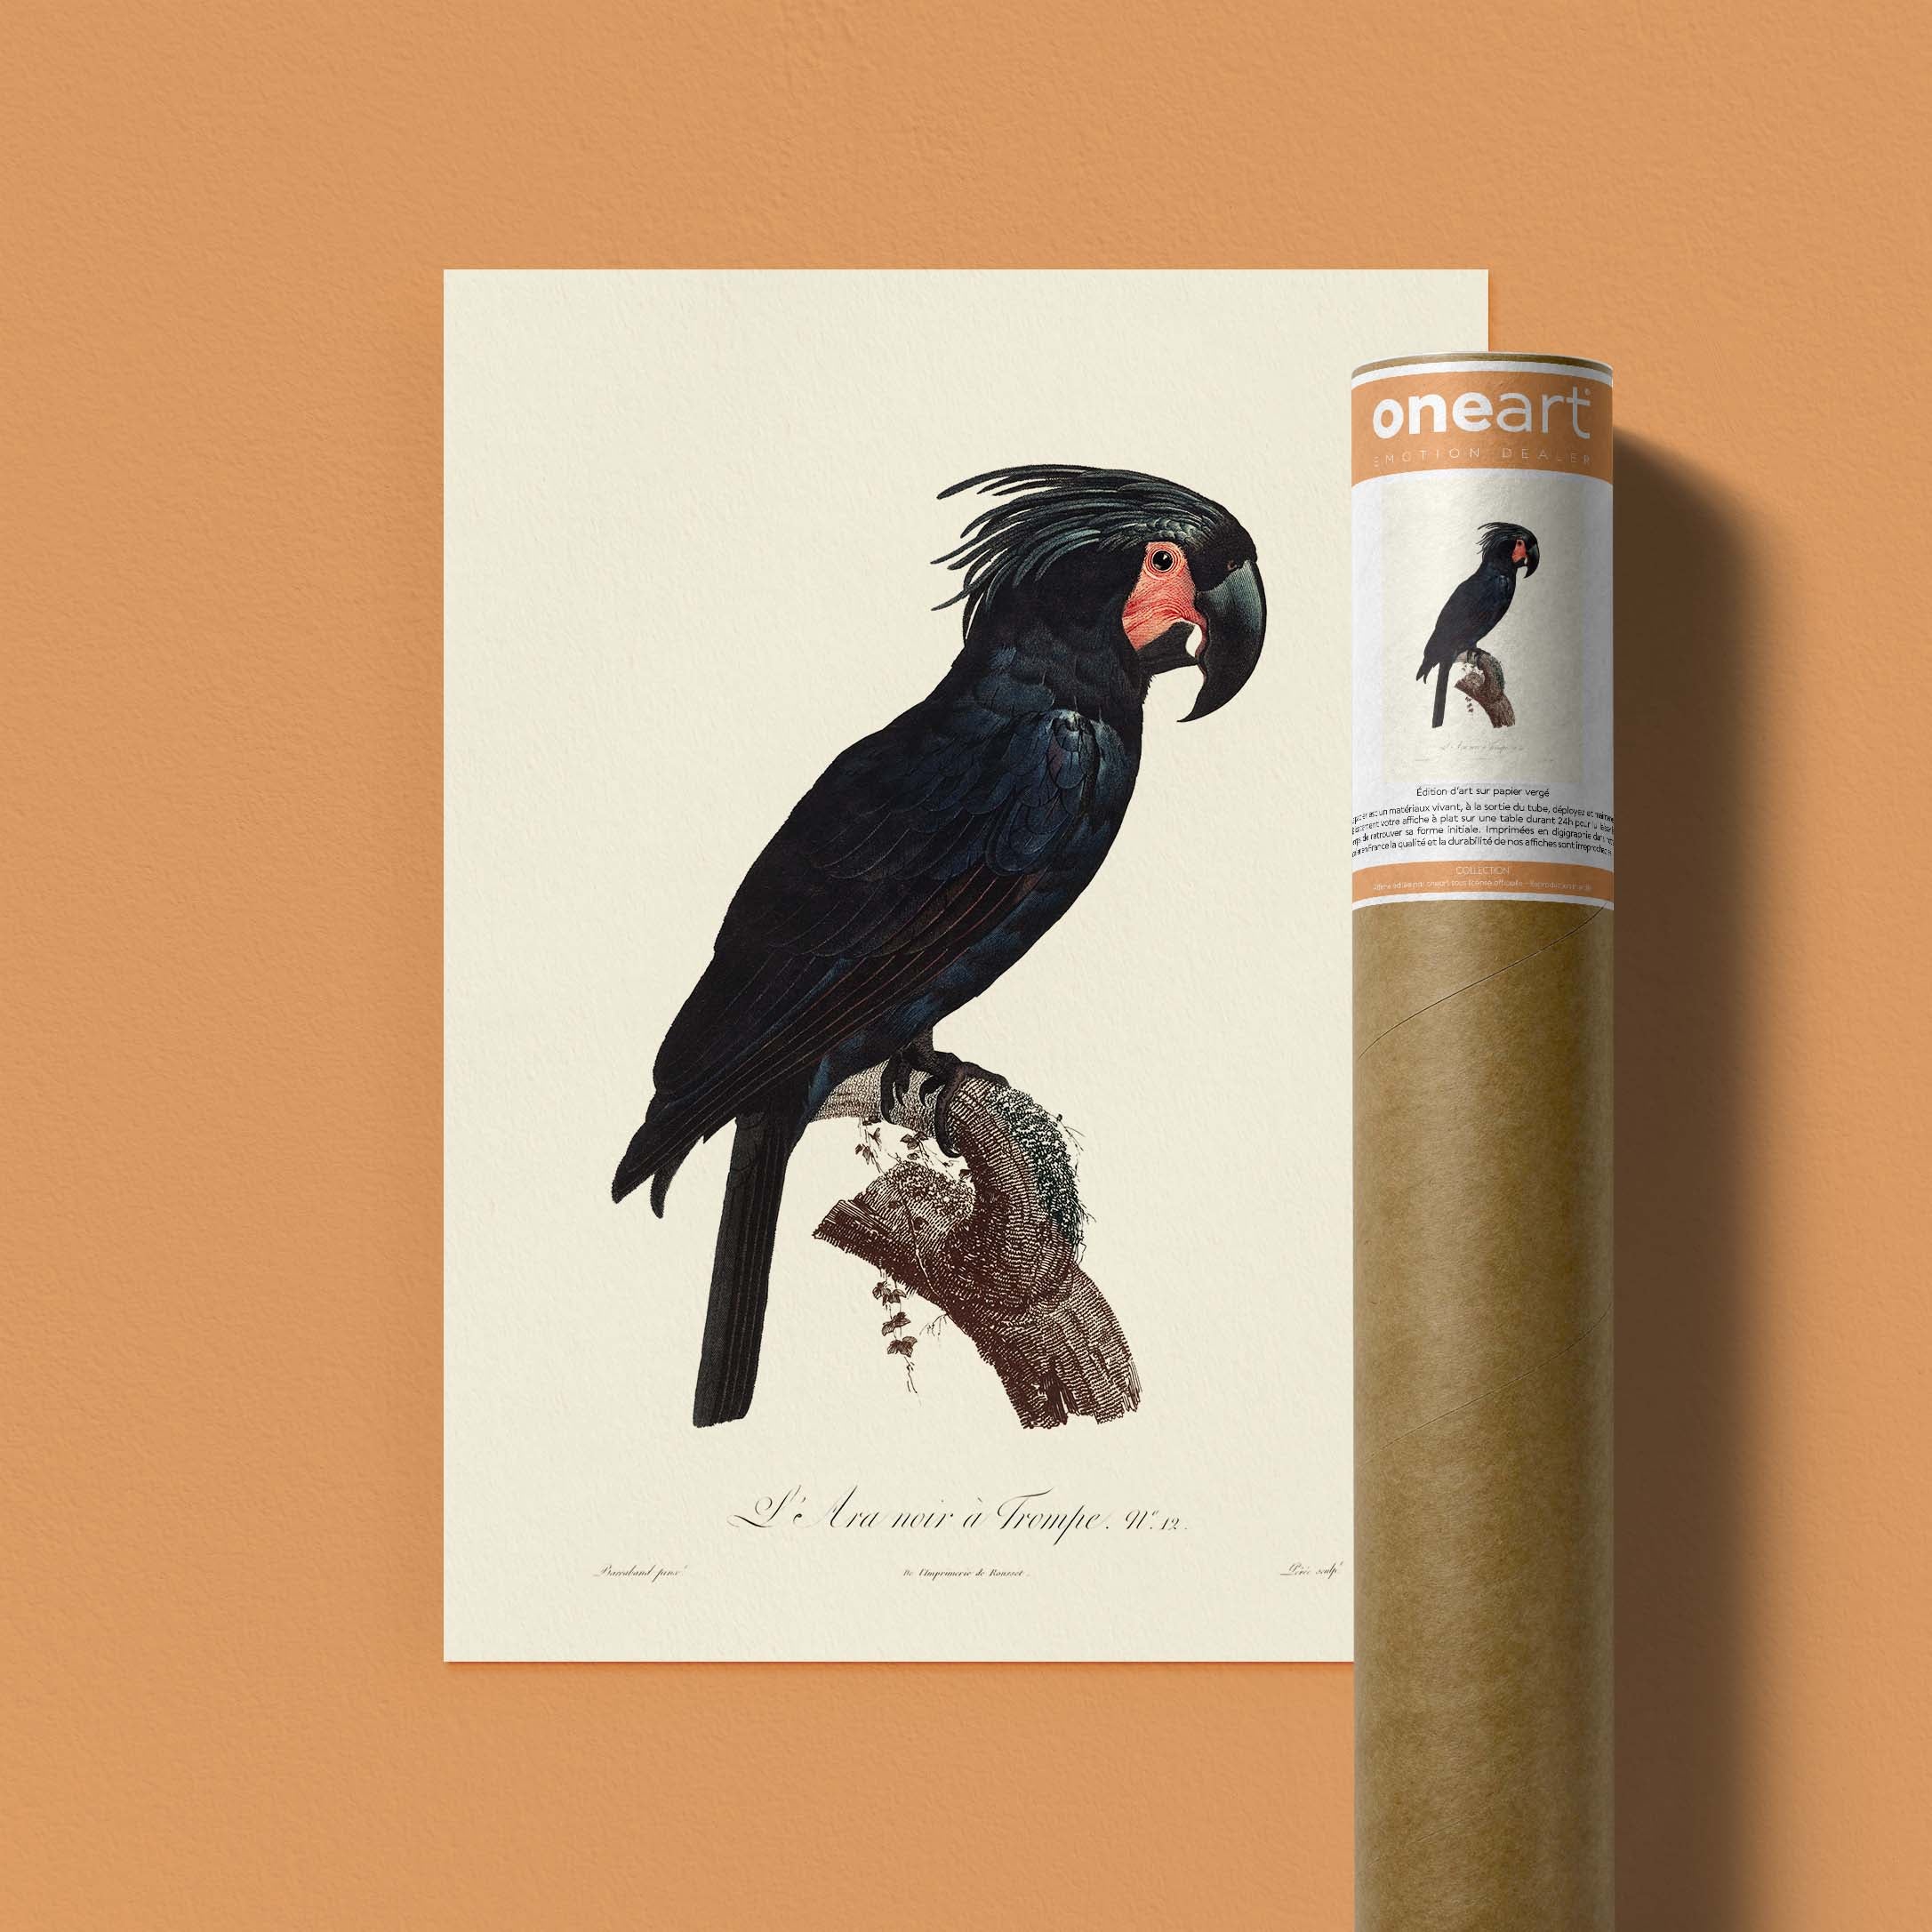 Planche d'ornithologie - L'Ara noir à trompe-oneart.fr